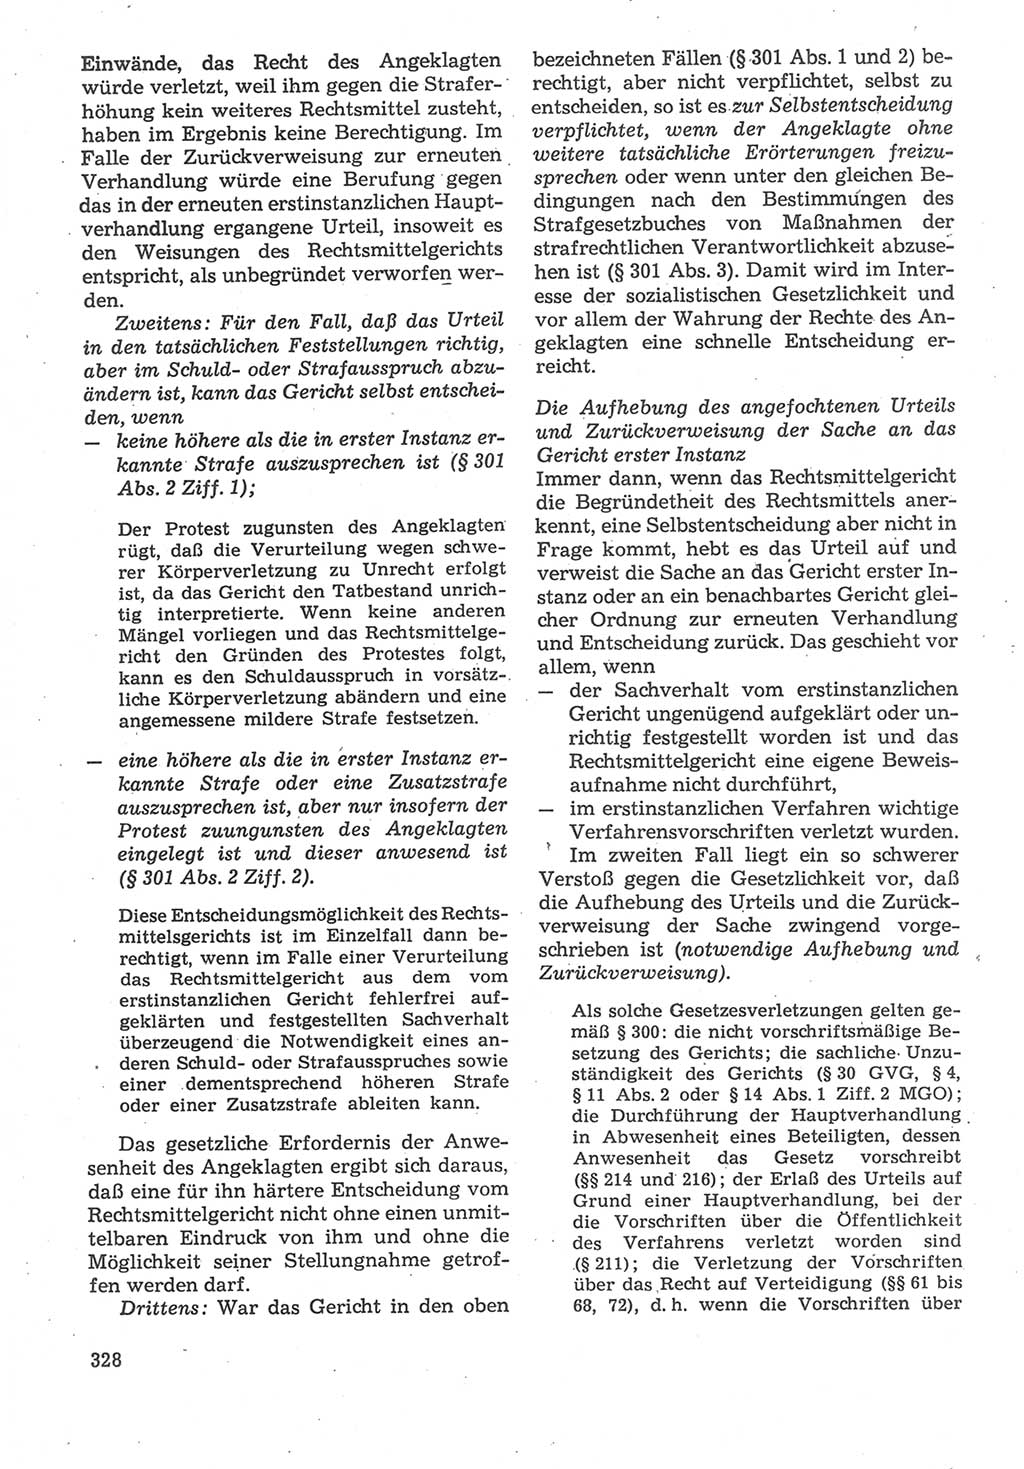 Strafverfahrensrecht [Deutsche Demokratische Republik (DDR)], Lehrbuch 1987, Seite 328 (Strafverf.-R. DDR Lb. 1987, S. 328)